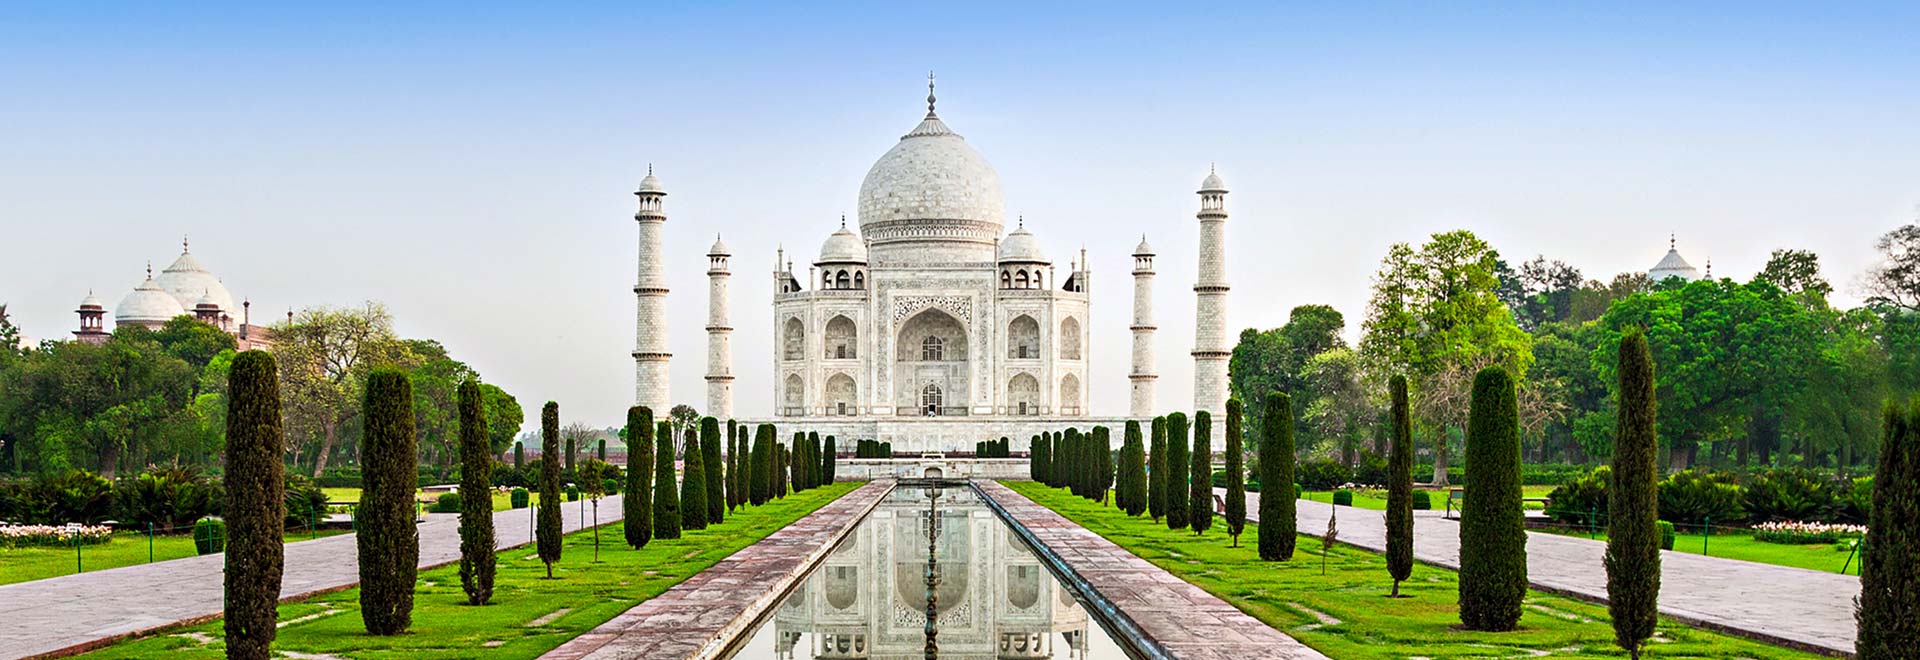 Asia Taj Mahal Treasures India MH